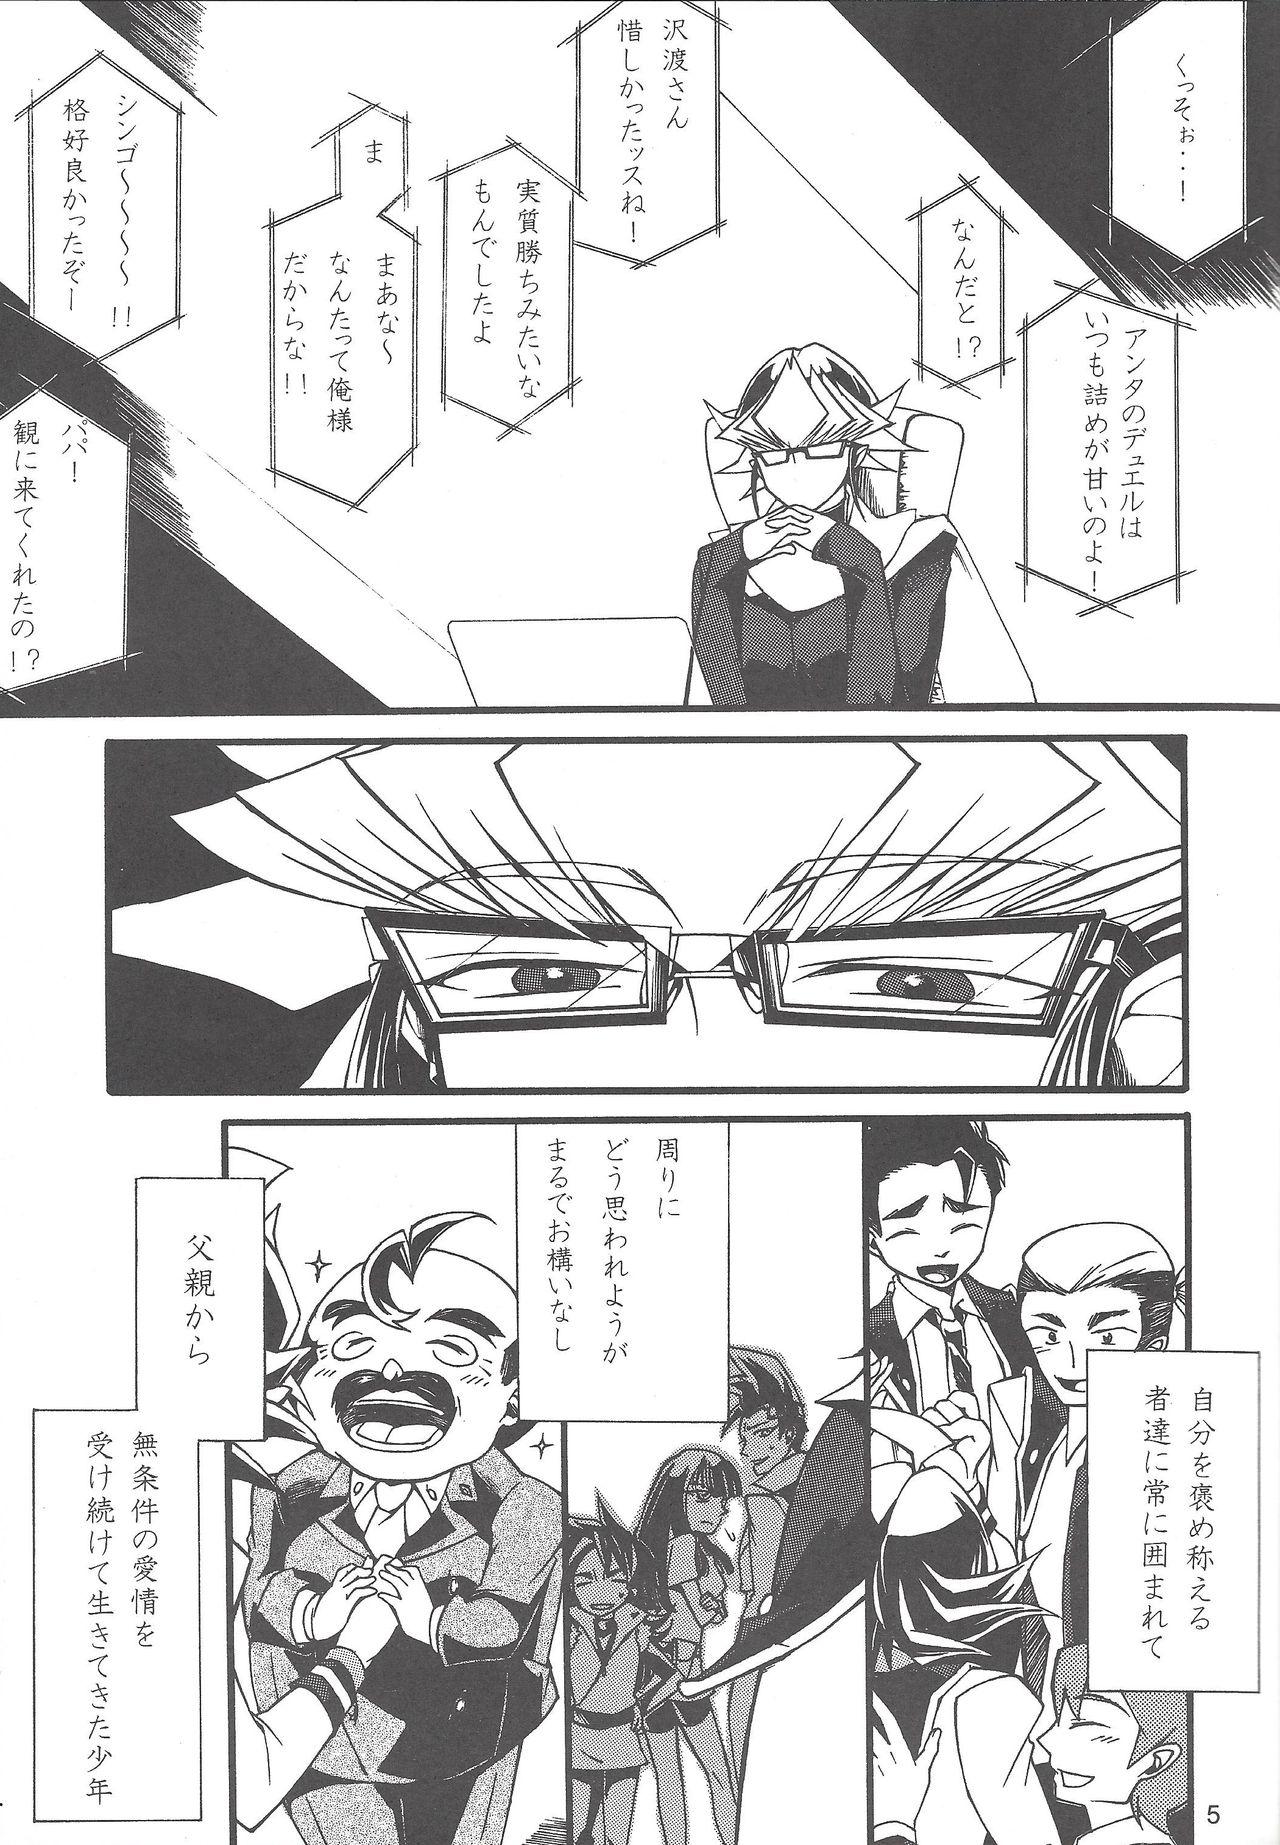 Goth Uso-tsuki akuma no koi - Yu gi oh arc v Teenies - Page 4